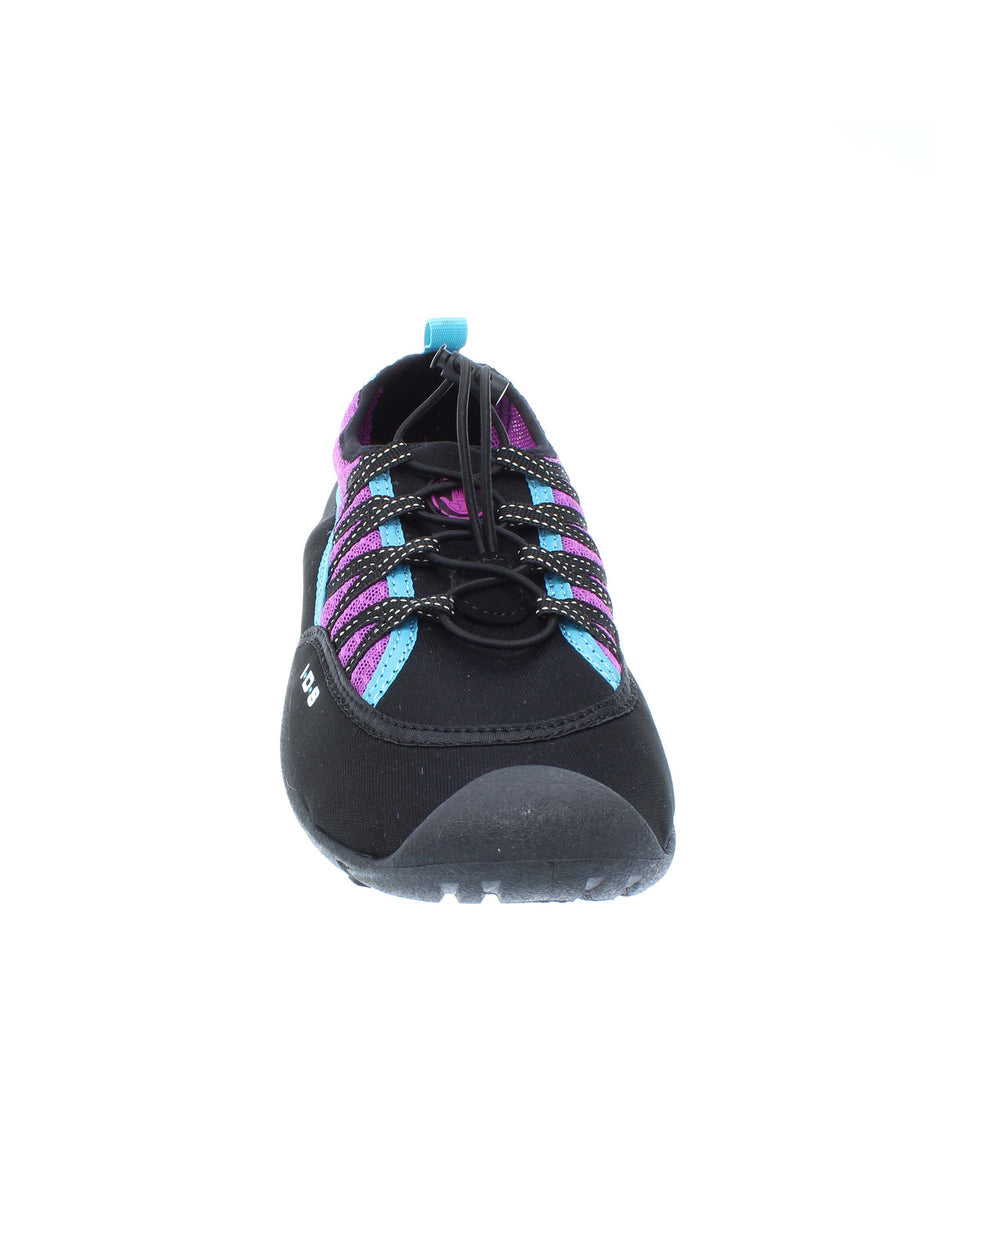 Women's Sidewinder Water Shoes - Black/Oasis Purple - Body Glove